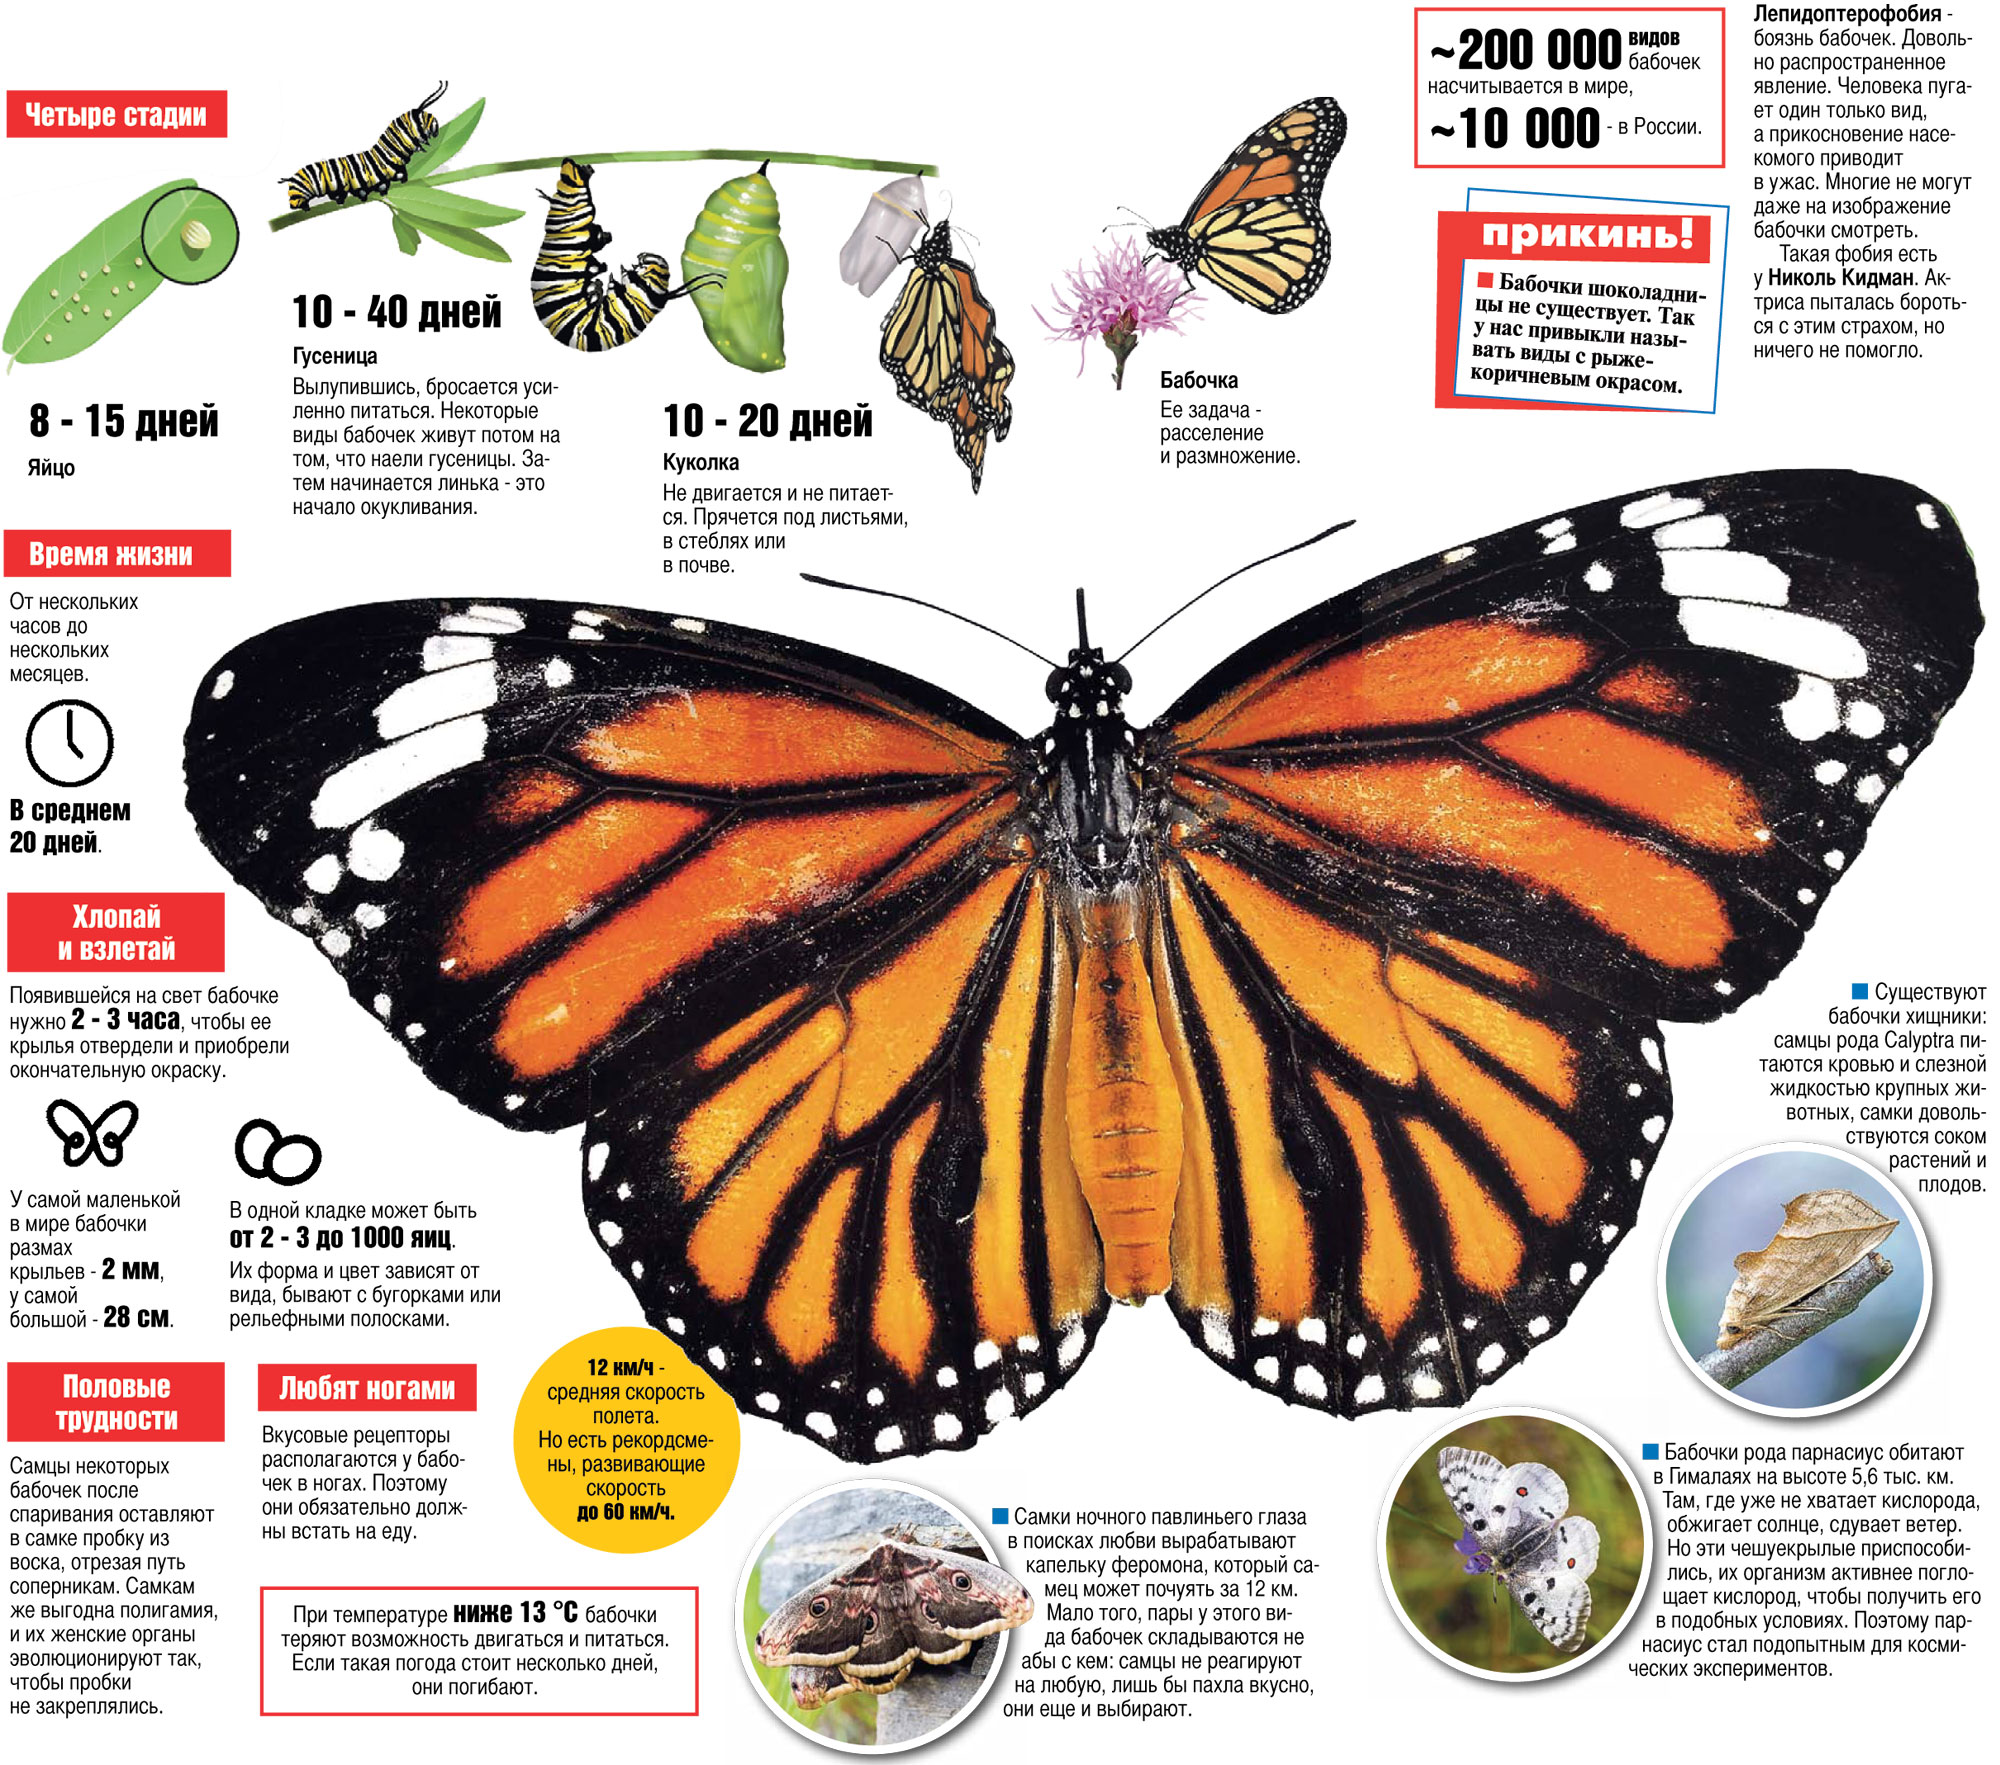 Новые враги бабочек — выкошенные газоны и сотовые вышки